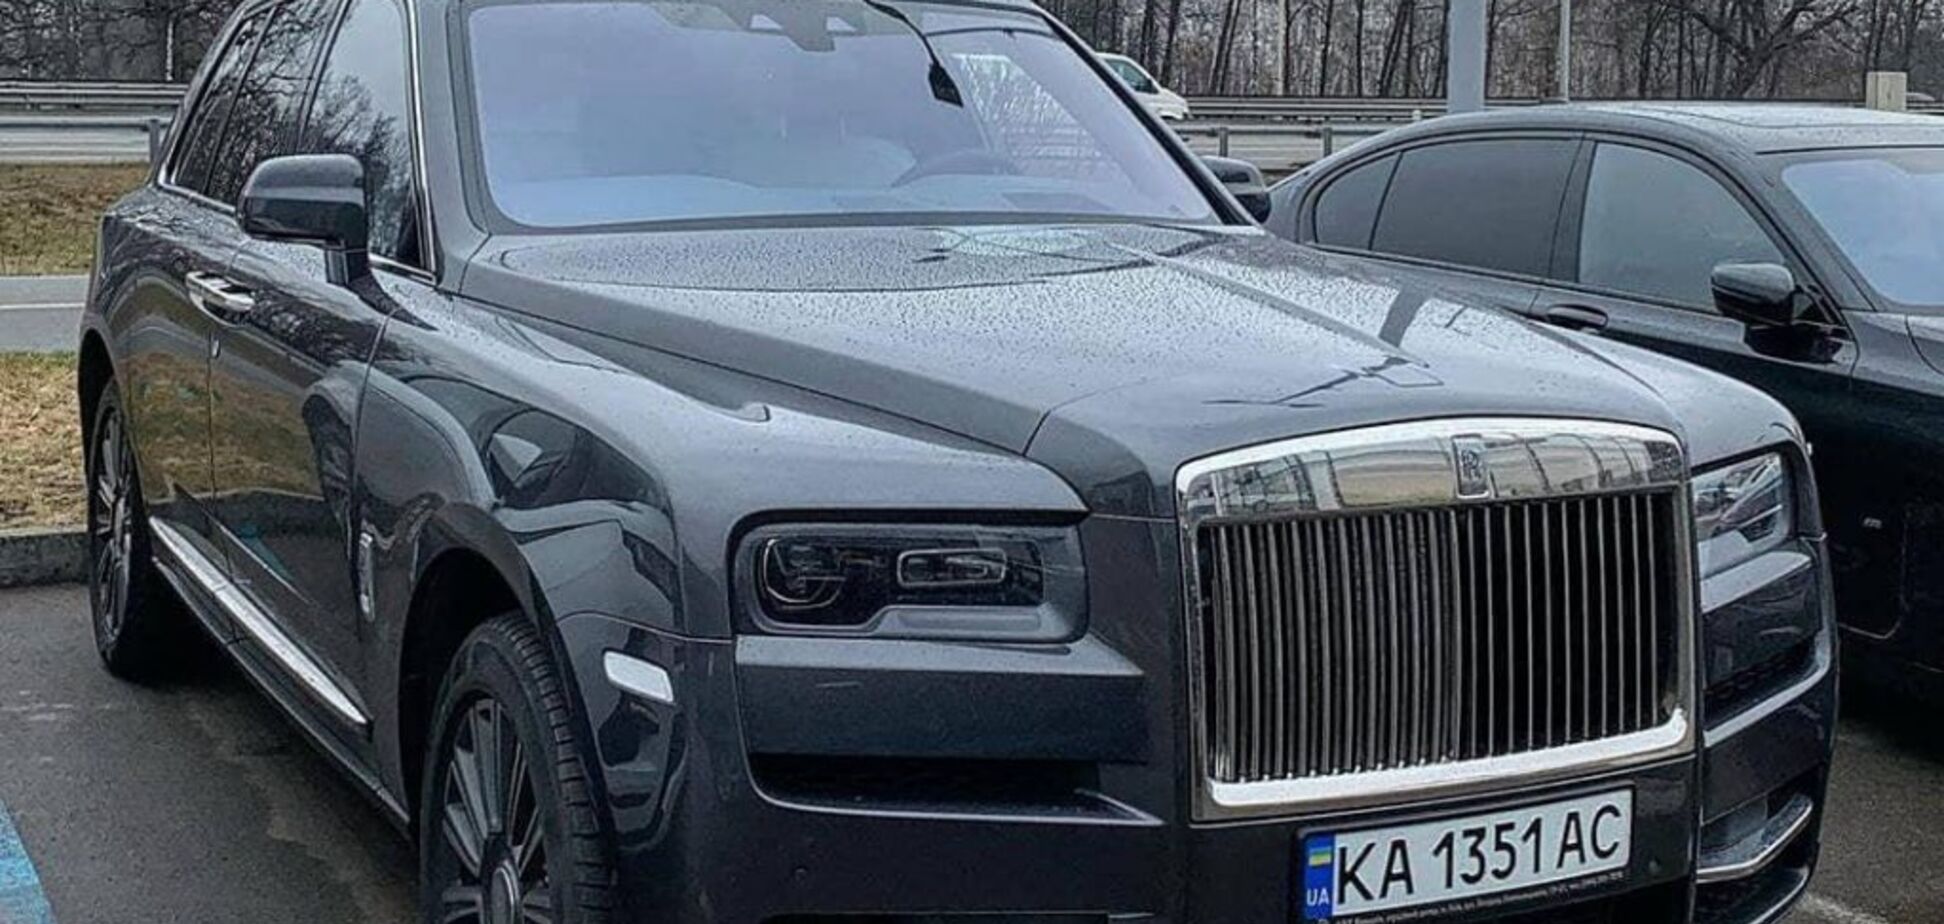 Українські багатії все частіше ставлять на свої авто звичайні номери